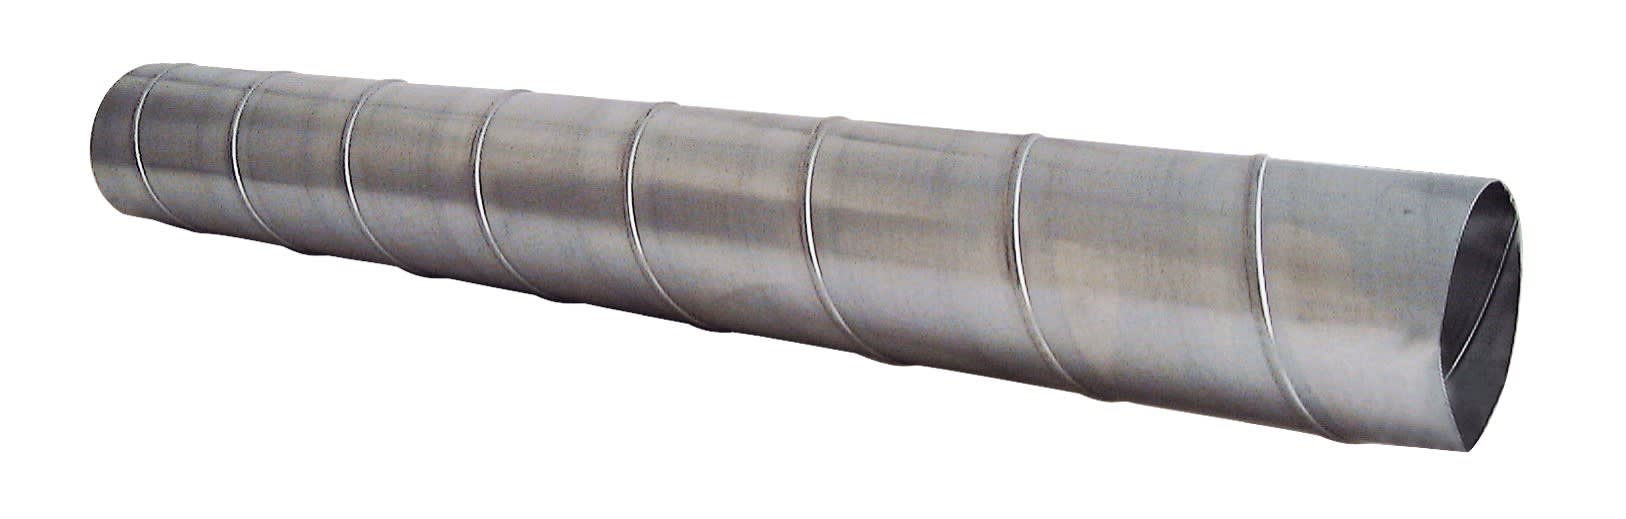 S&P - Conduit spiralé acier galvanisé, D 160 mm, longueur 3 m